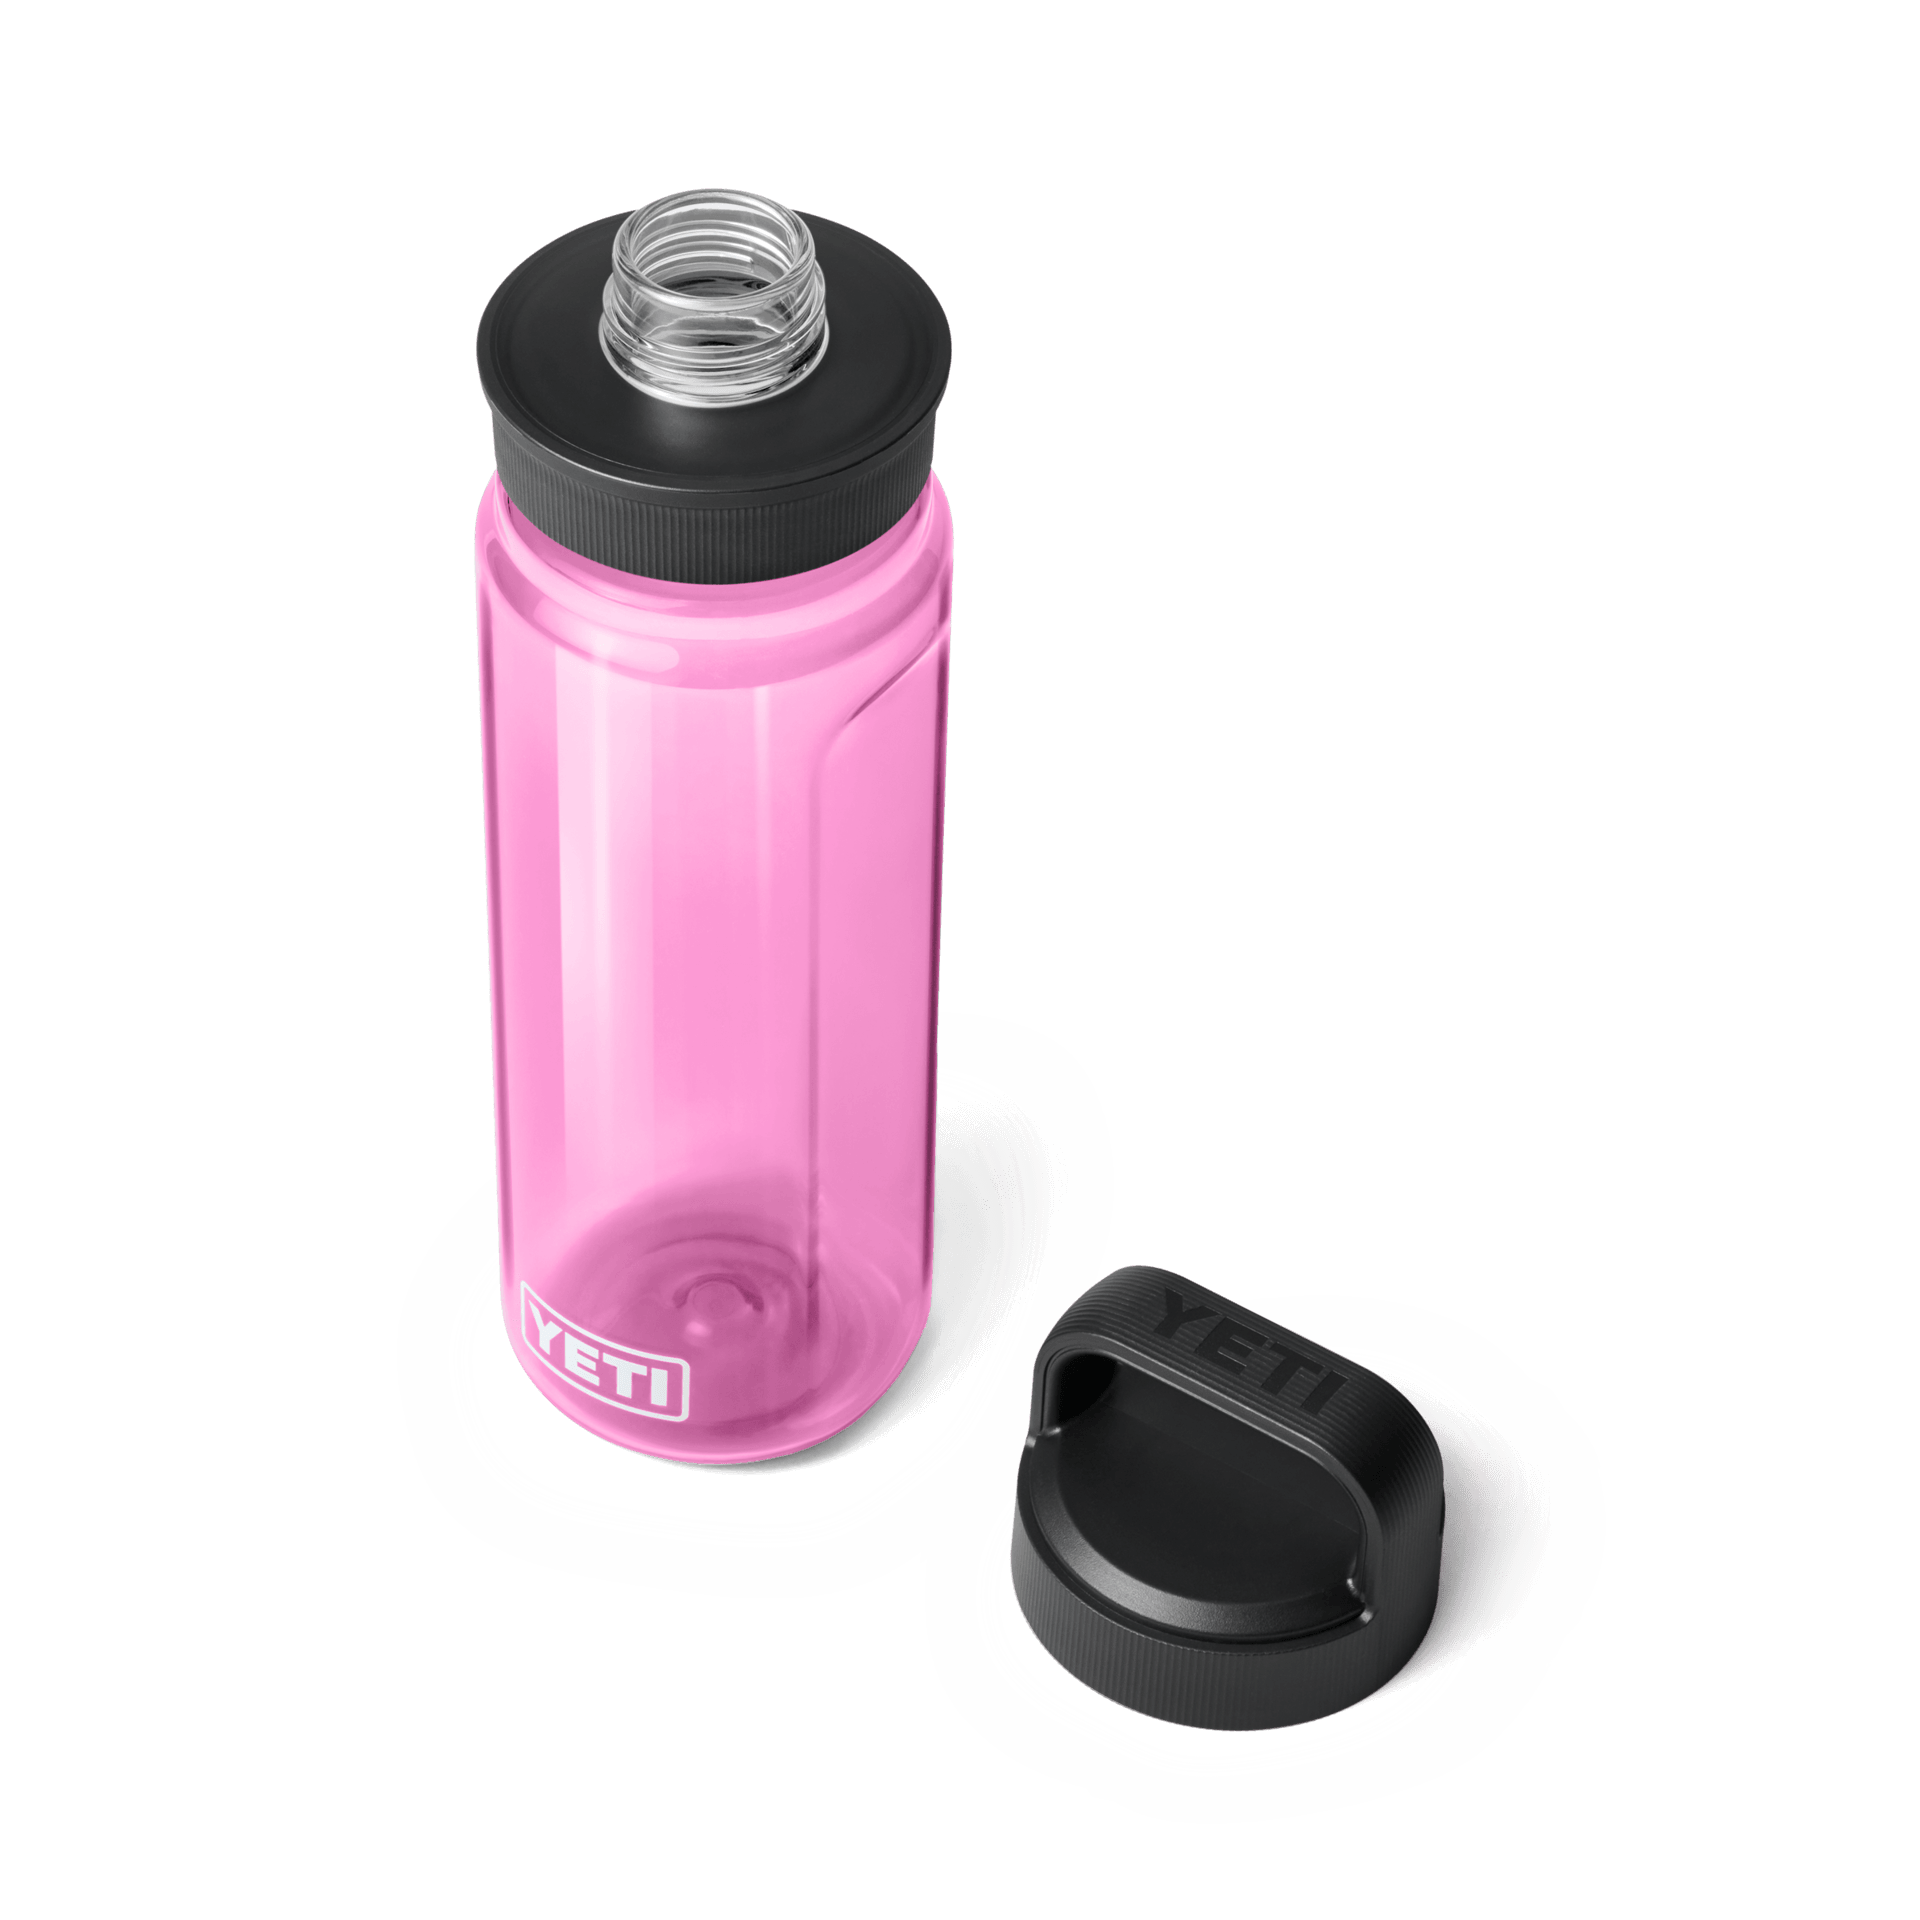 Yeti Rambler Water Bottle with Chug Cap - 18 oz - Power Pink